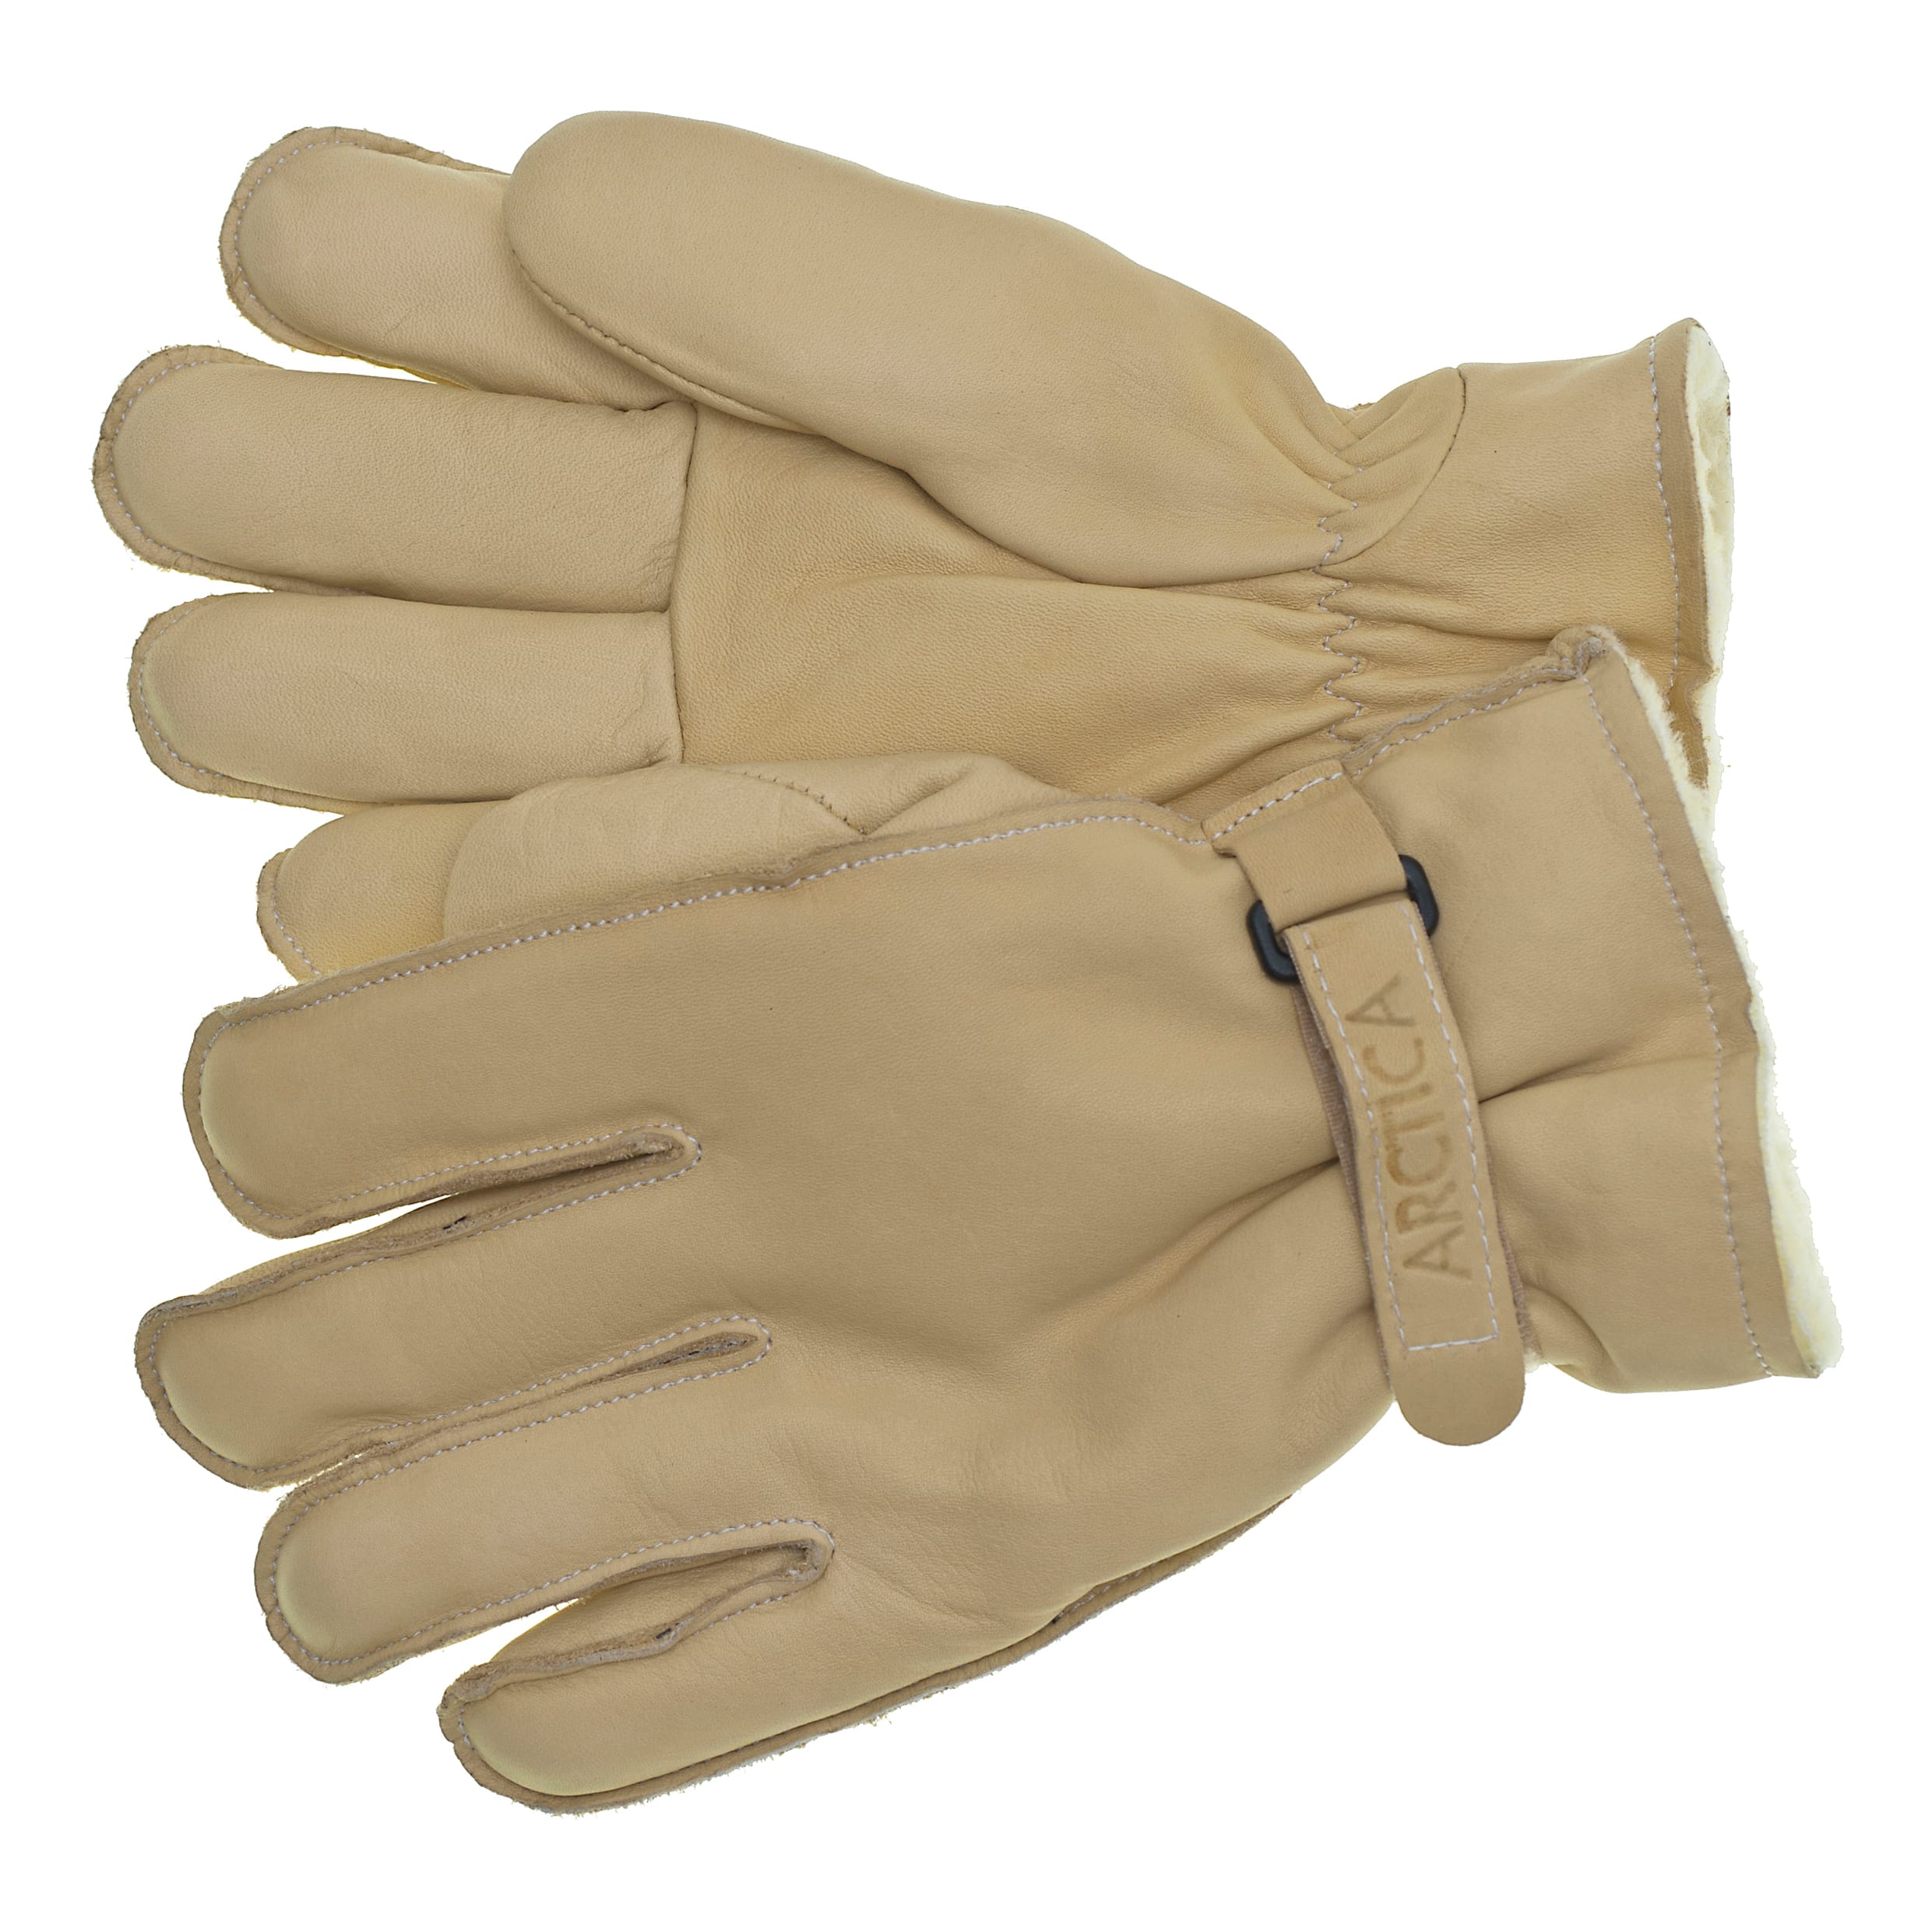 Raber Glove Arctica Sport Gloves - Cream